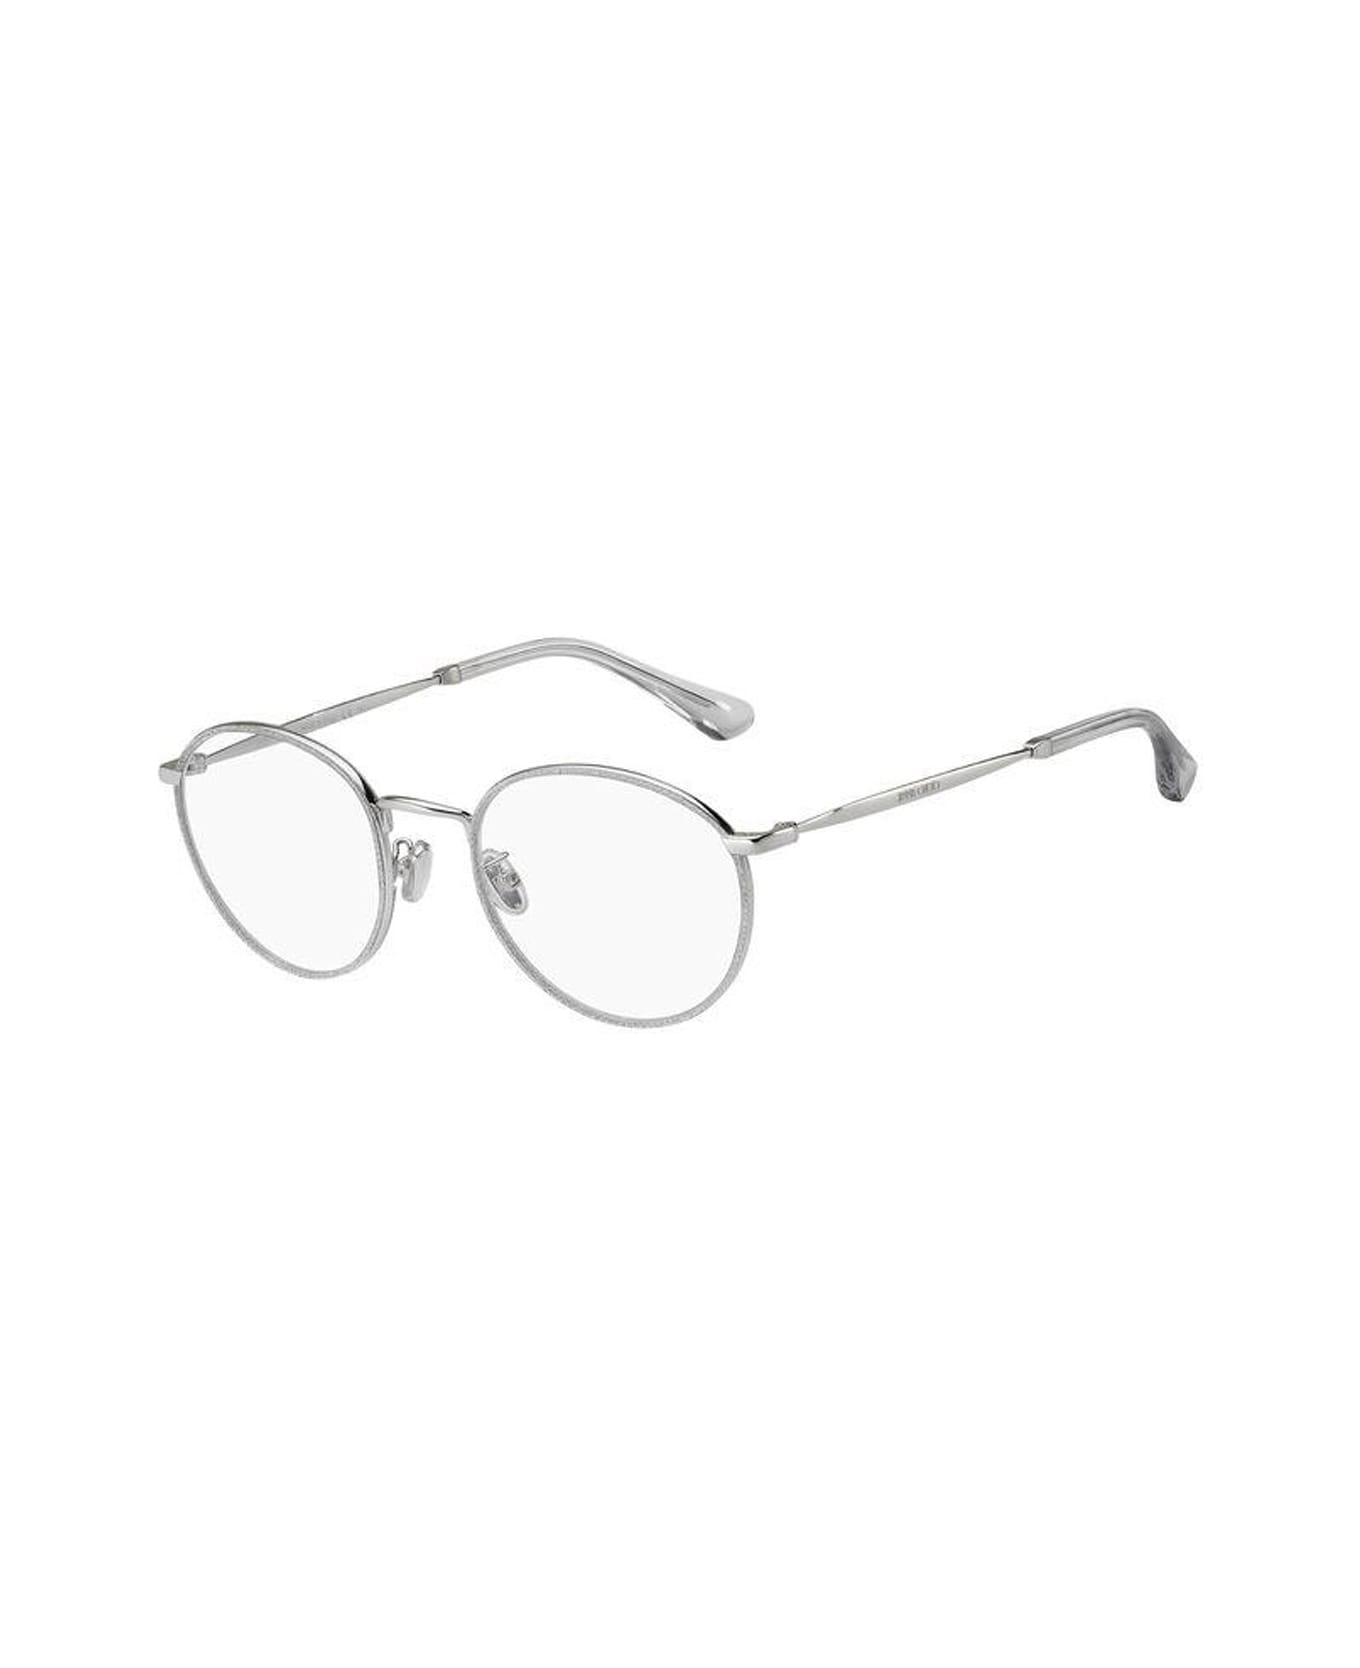 Jimmy Choo Eyewear Jc251/g Glasses - Argento